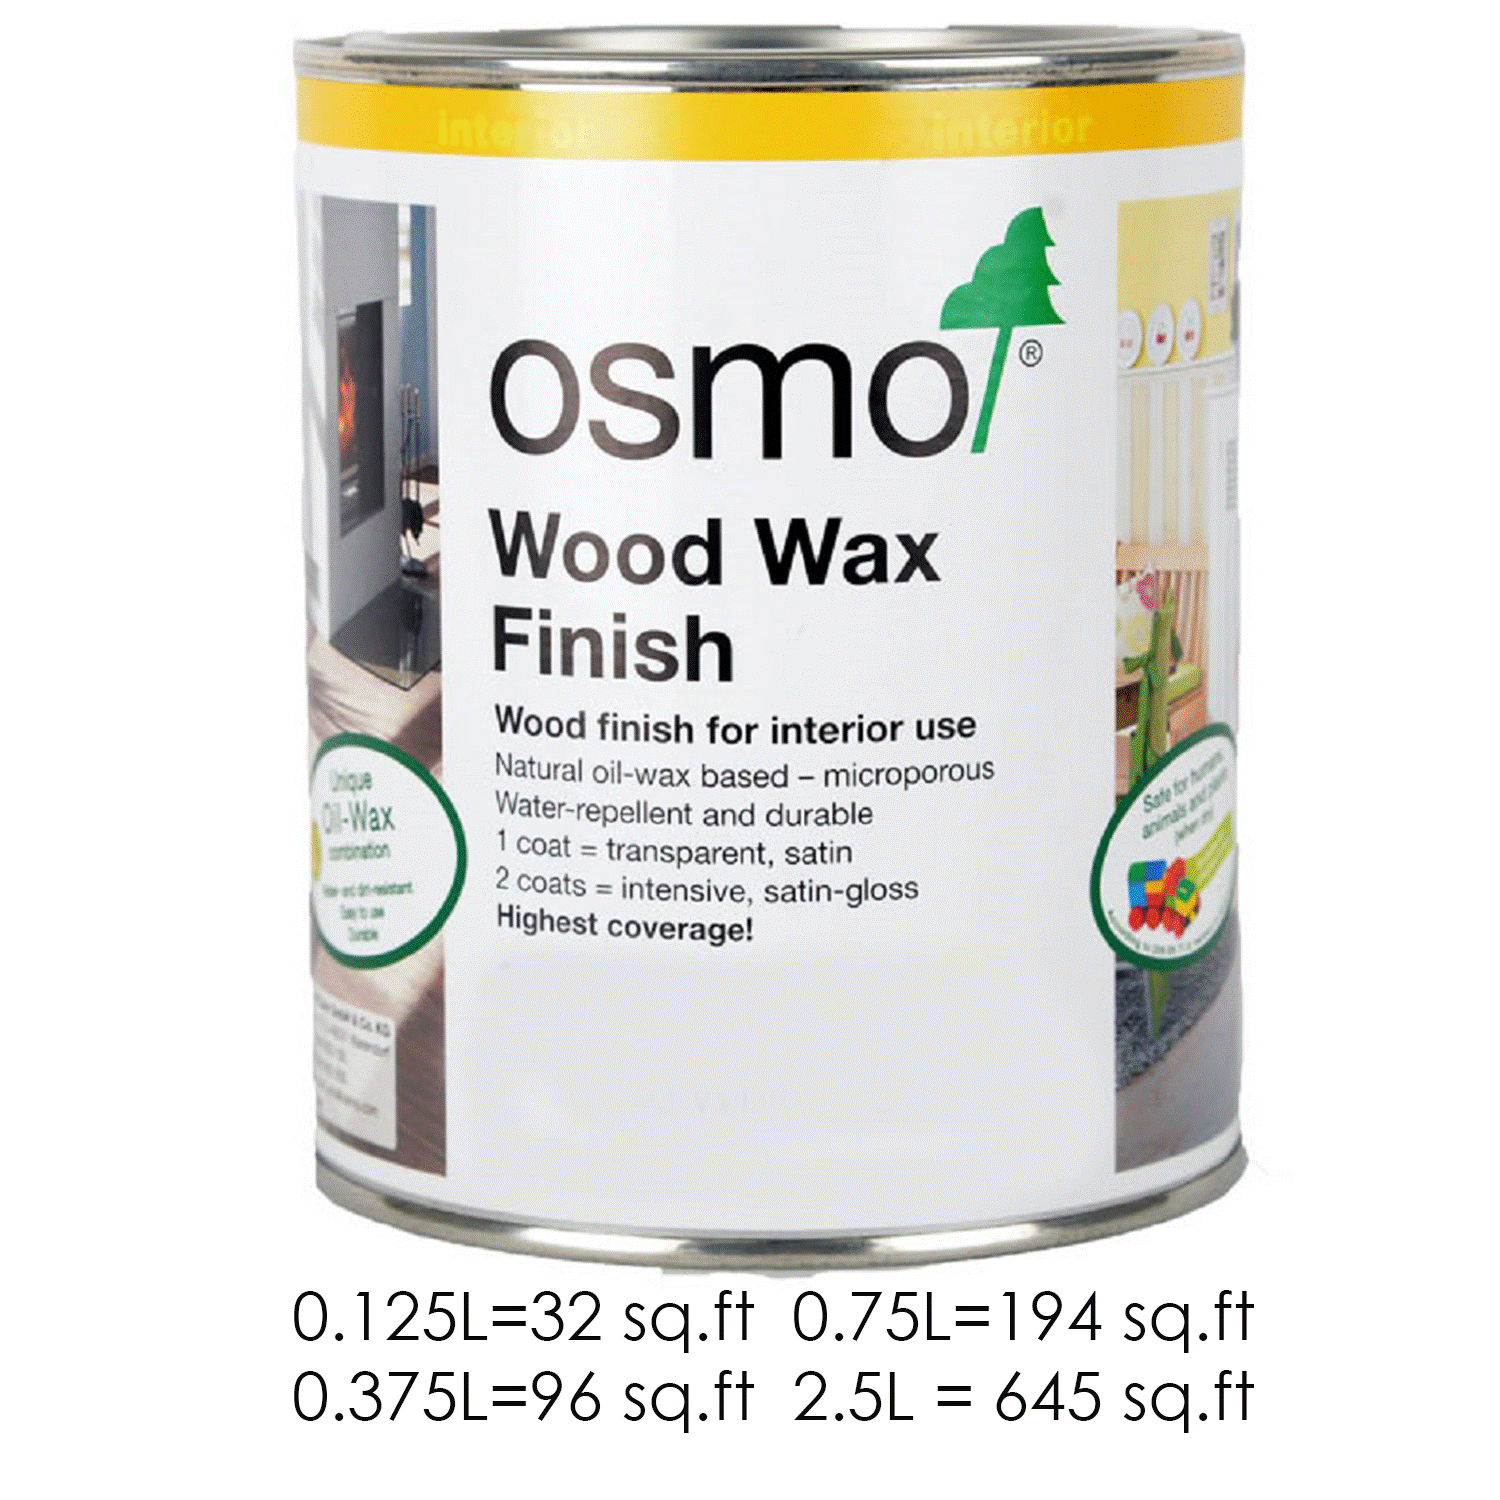 Osmo Silk Gray Wood Wax